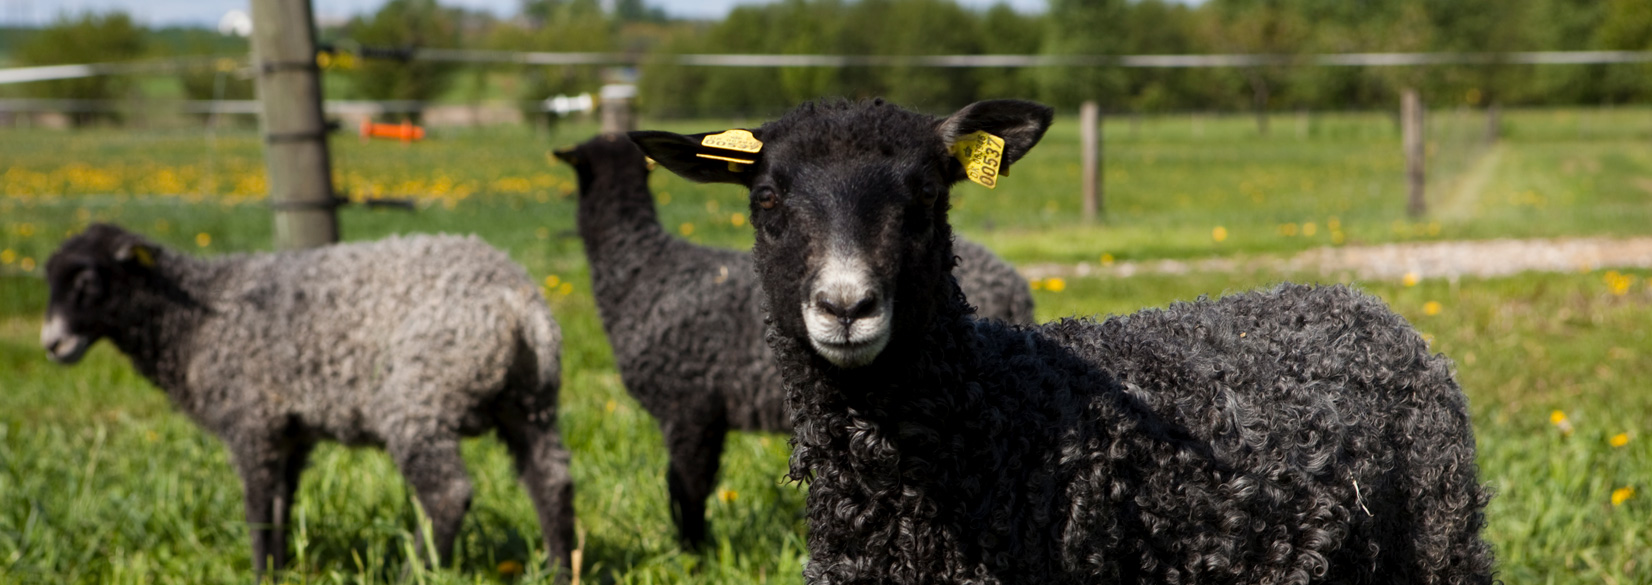 Landbrugsfaglig viden om får, geder, mink og andre dyr